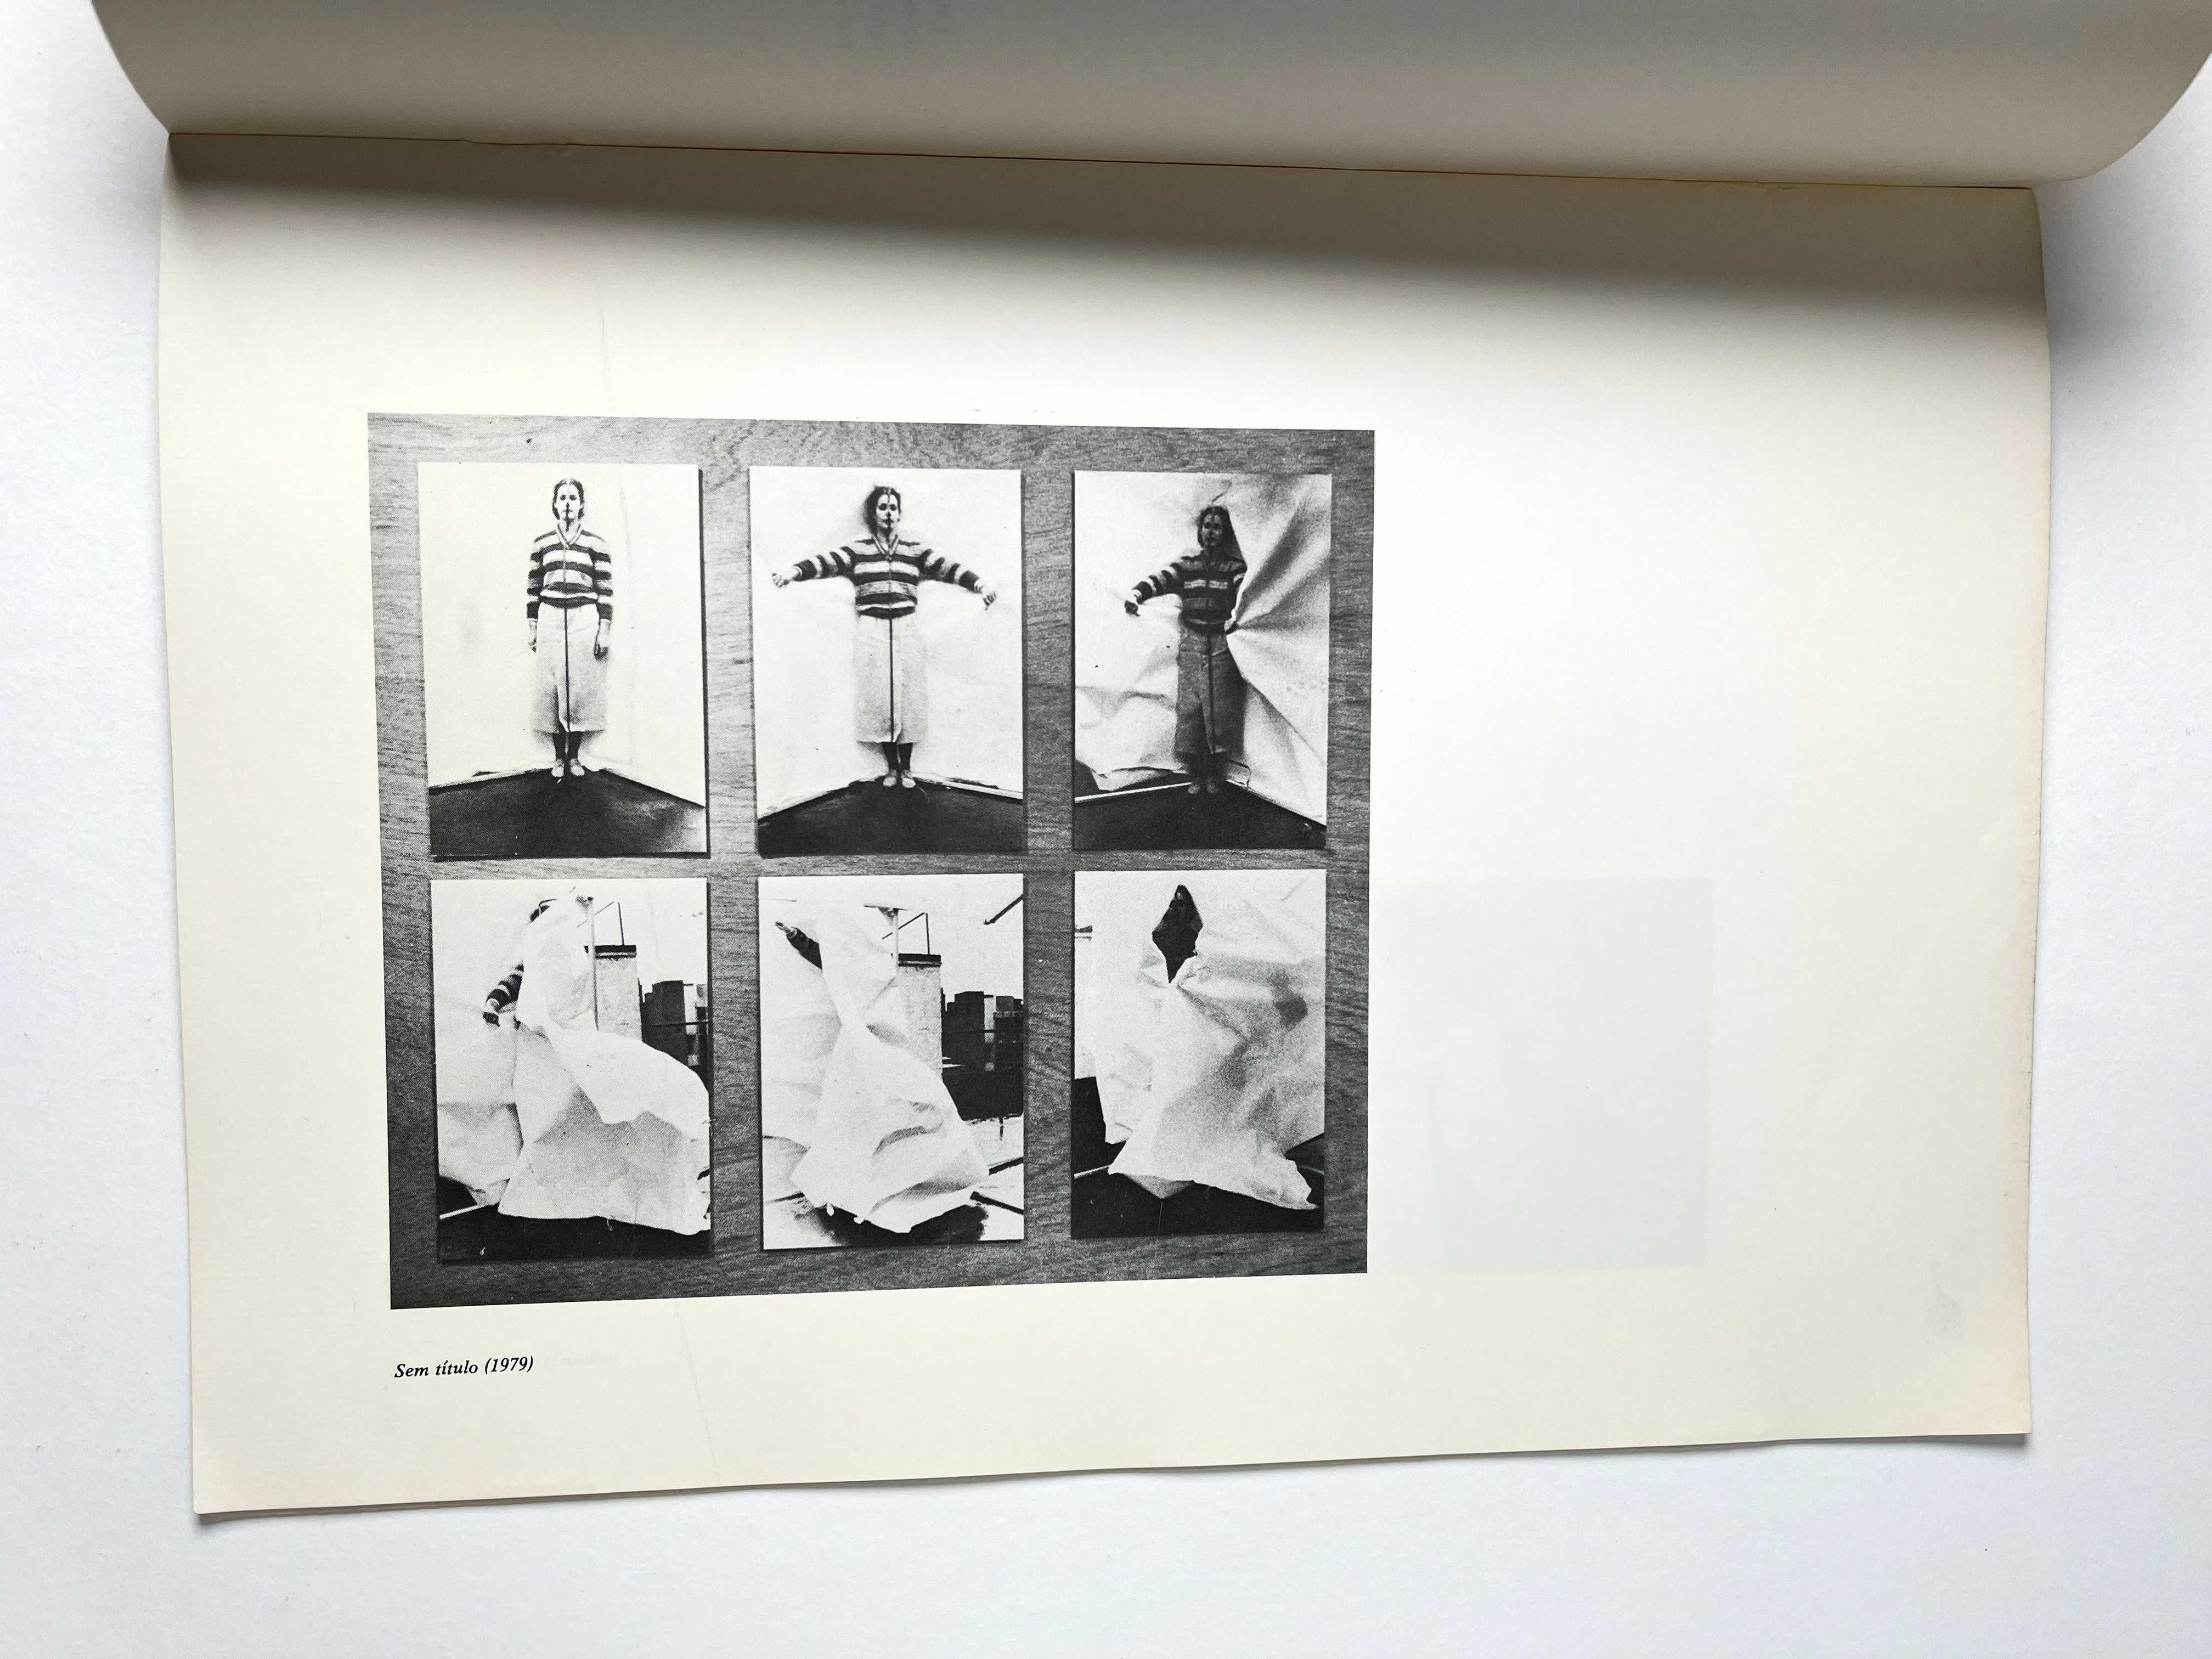 Joana Rosa Premiados da Lis 79 Galeria Nacional de Arte Moderna 1980